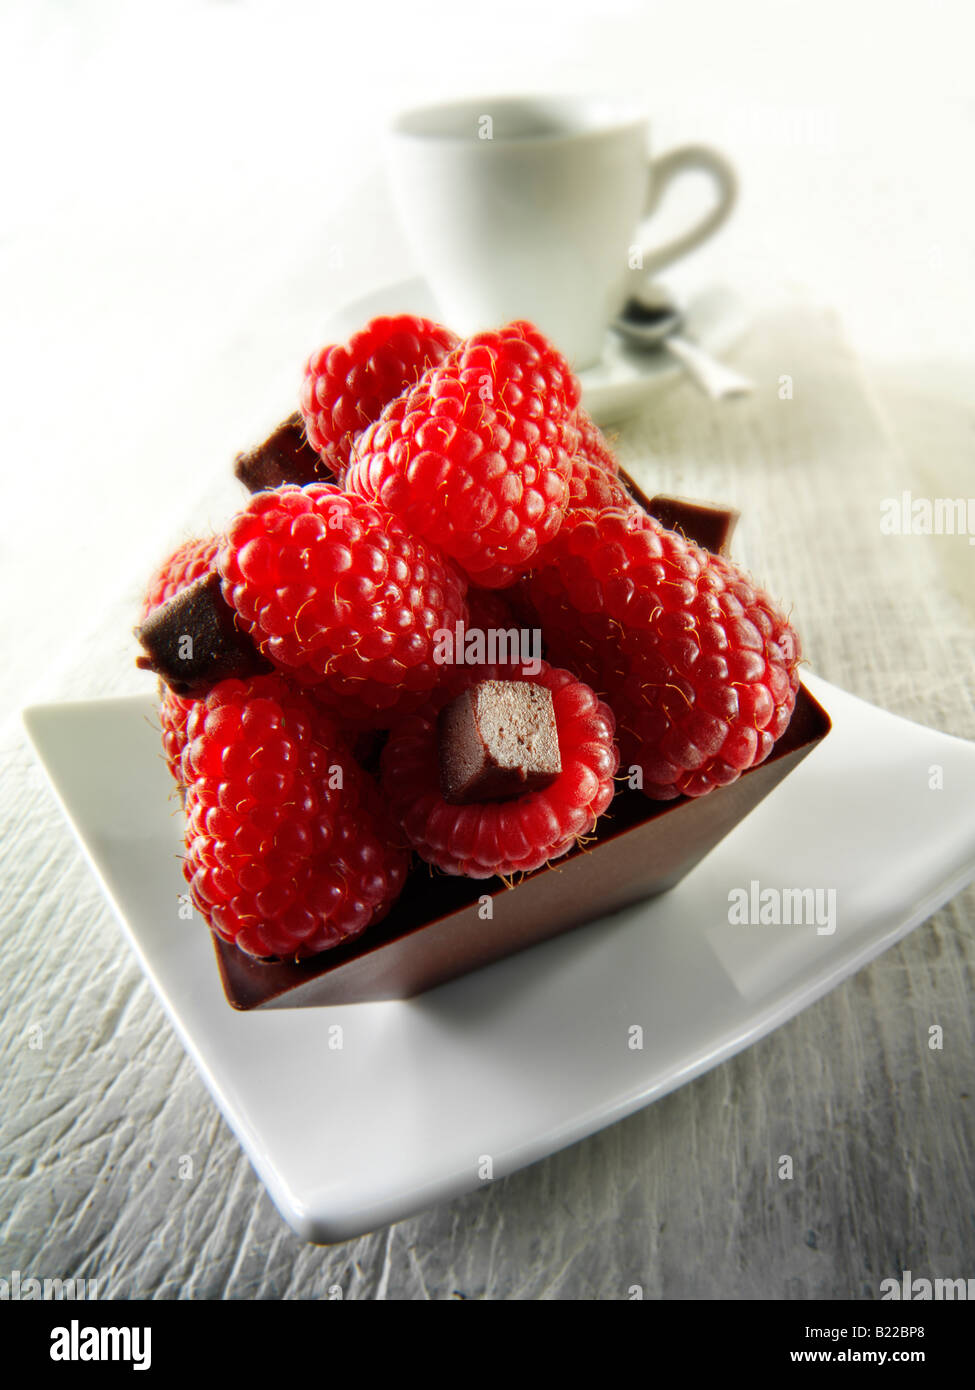 Una pastelería hecha a mano especialidad rica en deliciosas tortas de chocolate relleno de frambuesas frescas con café en un ambiente blanco Foto de stock